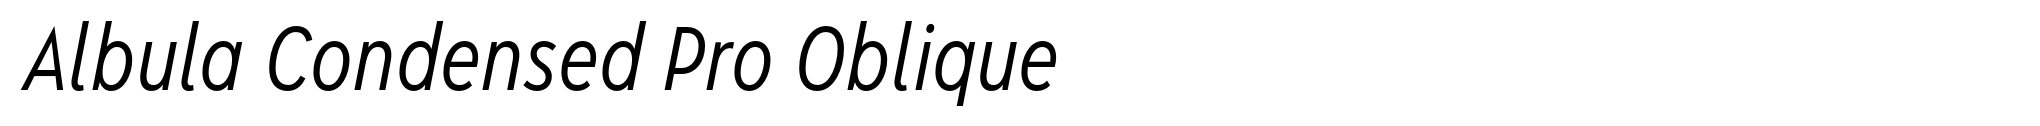 Albula Condensed Pro Oblique image